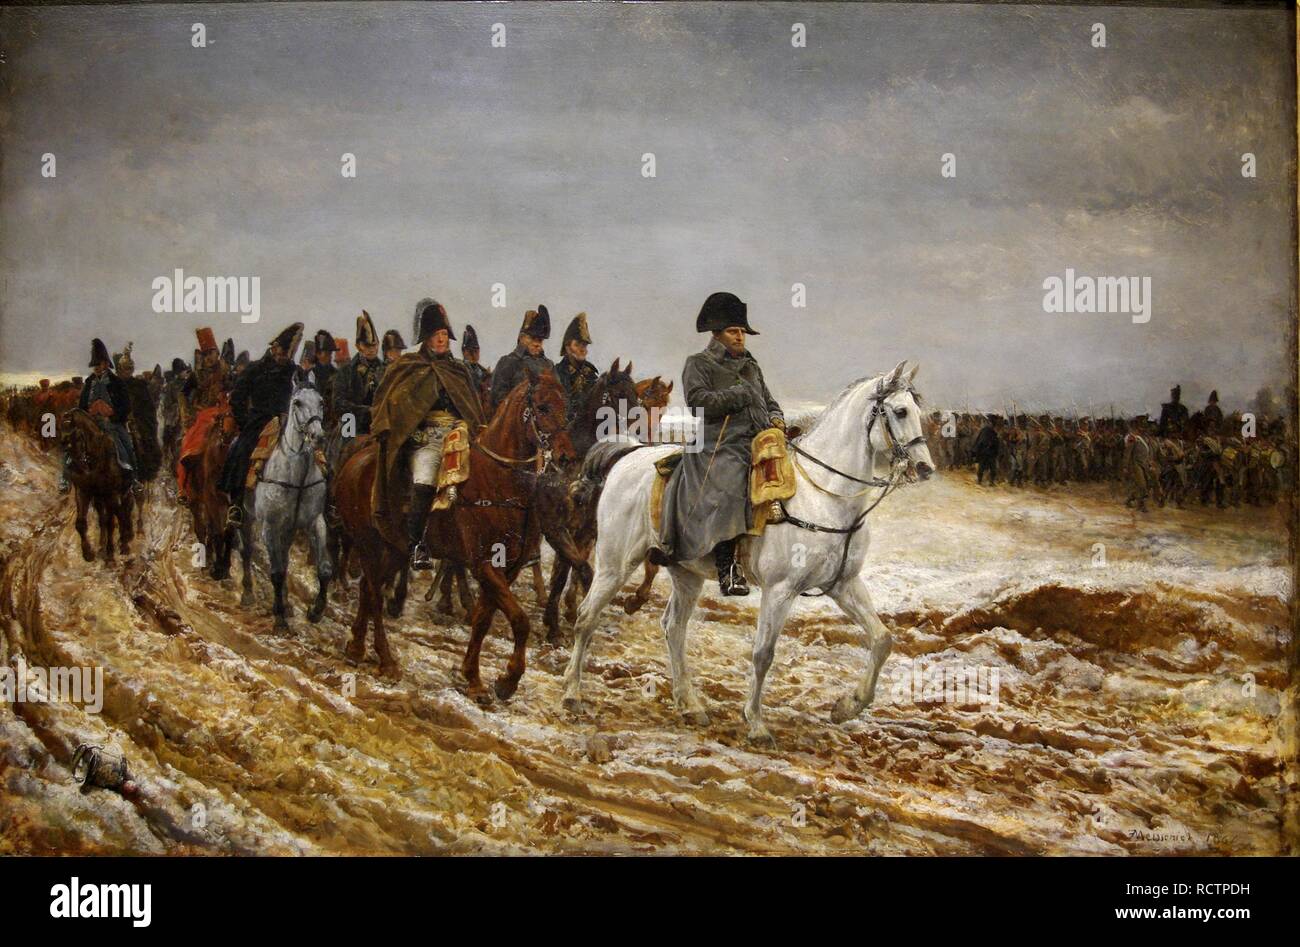 1814. Campagne de France (French Campaign). Museum: Musée d'Orsay, Paris. Author: MEISSONIER, JEAN-LOUIS-ERNEST. Stock Photo